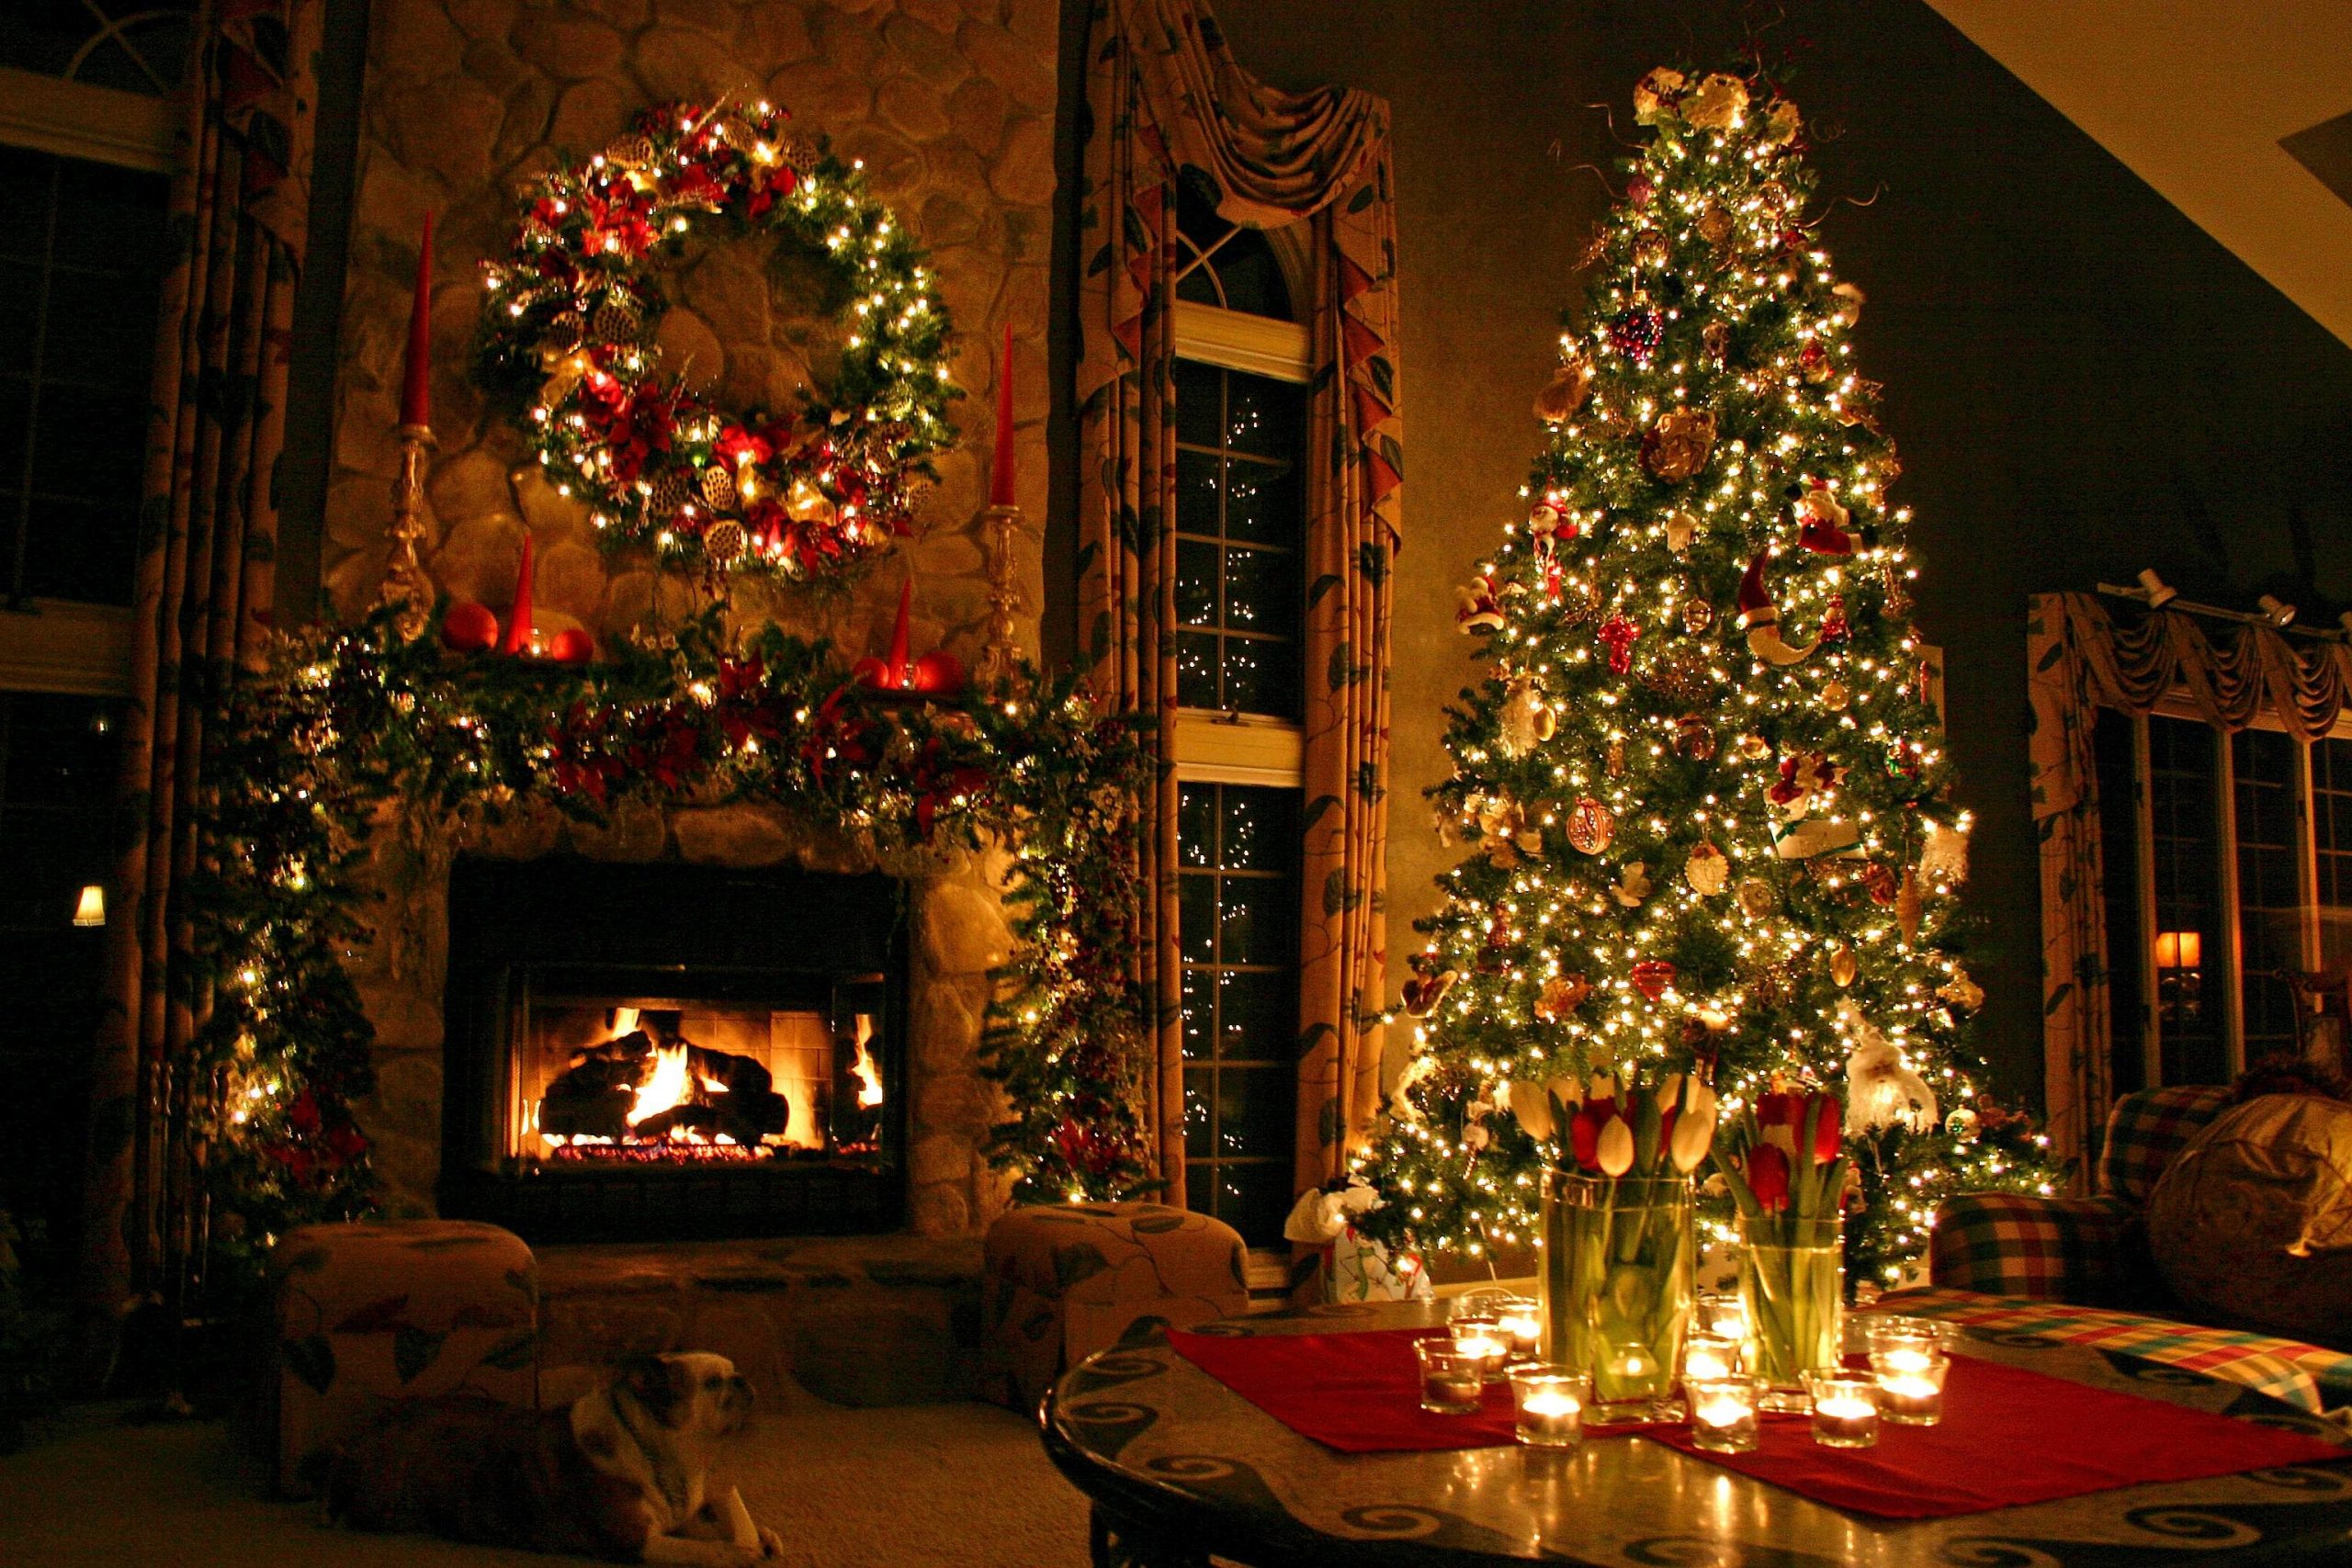 Mùa Giáng sinh đã đến, và cây thông Noel lại trở thành biểu tượng đặc biệt cho mùa lễ hội này. Với nguồn gốc từ Ý, cây thông Noel đã được truyền thông trên toàn thế giới và vẫn tiếp tục mang lại niềm vui và tình yêu thương. Hãy đến với những bức ảnh đẹp về cây thông Noel để cảm nhận rõ hơn ý nghĩa của nó trong mùa lễ hội này.